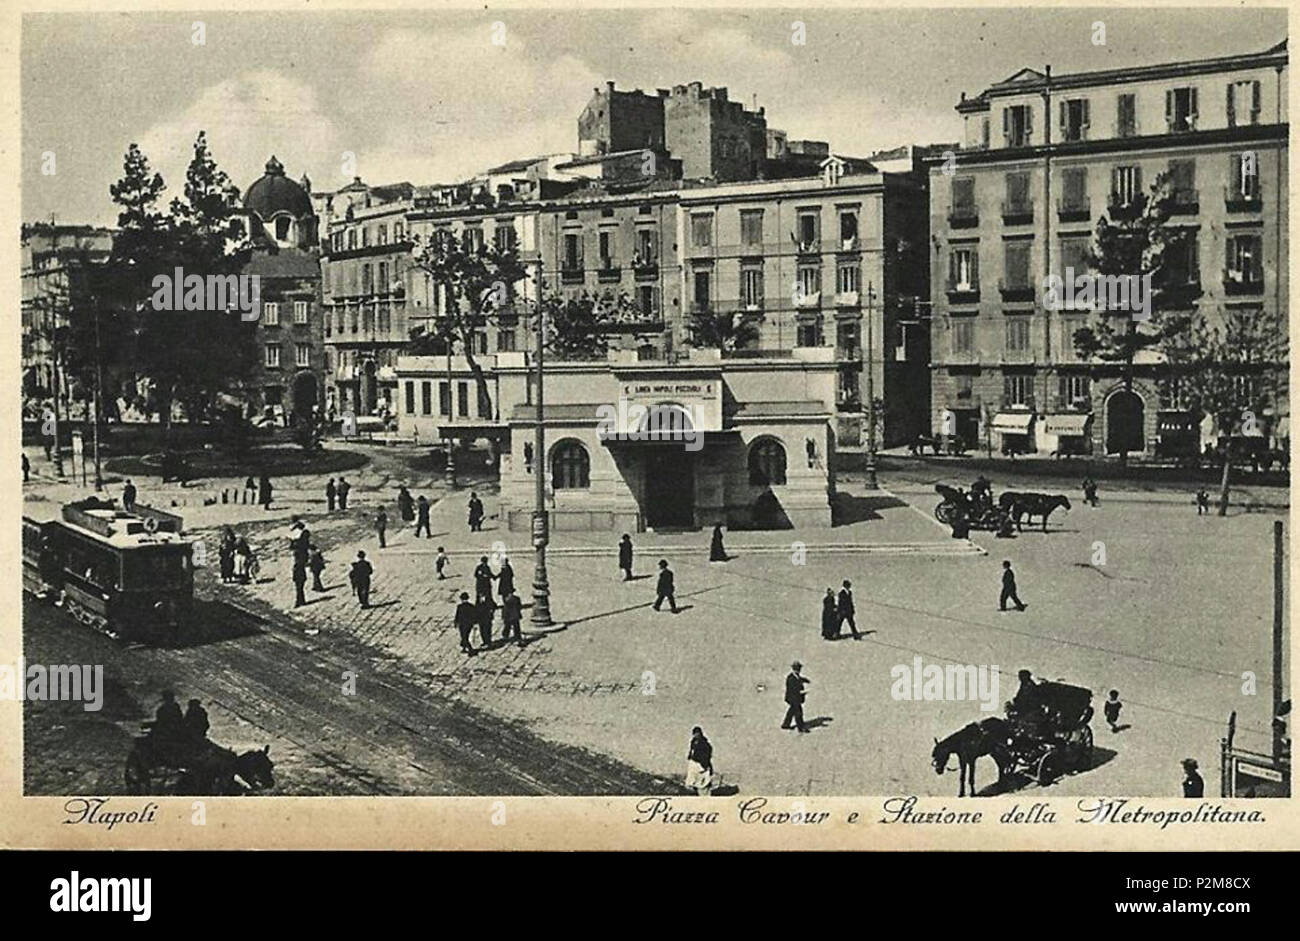 Italiano: 'Napoli - Piazza Cavour e Stazione della Metropolitana'  (cartolina d'epoca). 19th century. Unknown 61 Napoli, Piazza Cavour e  Metropolitana Stock Photo - Alamy